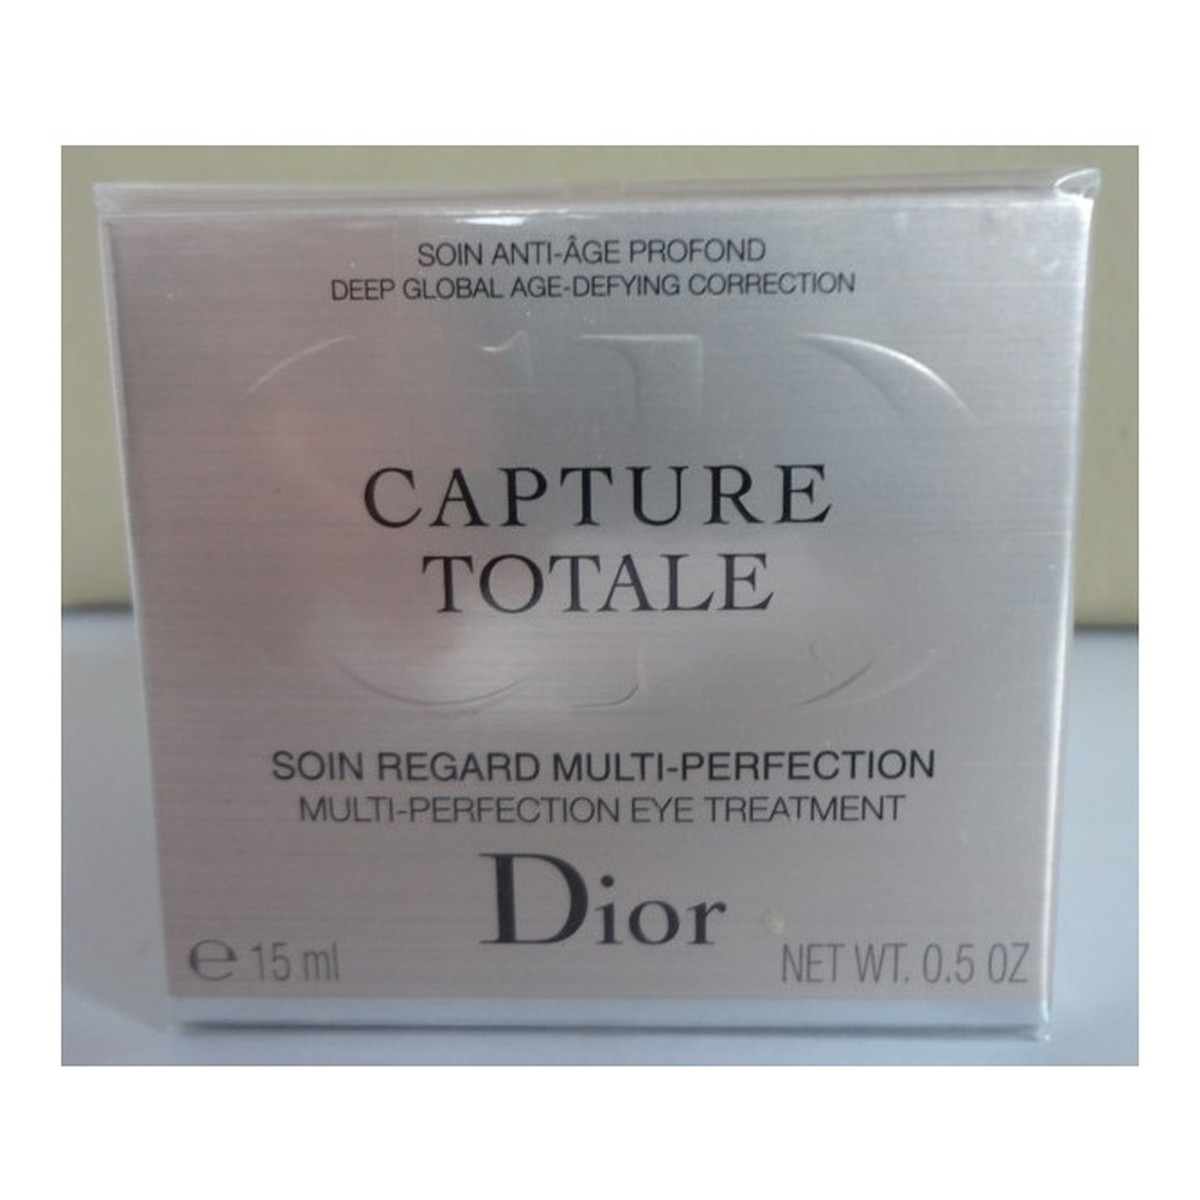 Dior Capture Totale Przeciwzmarszczkowy krem pod oczy 15ml